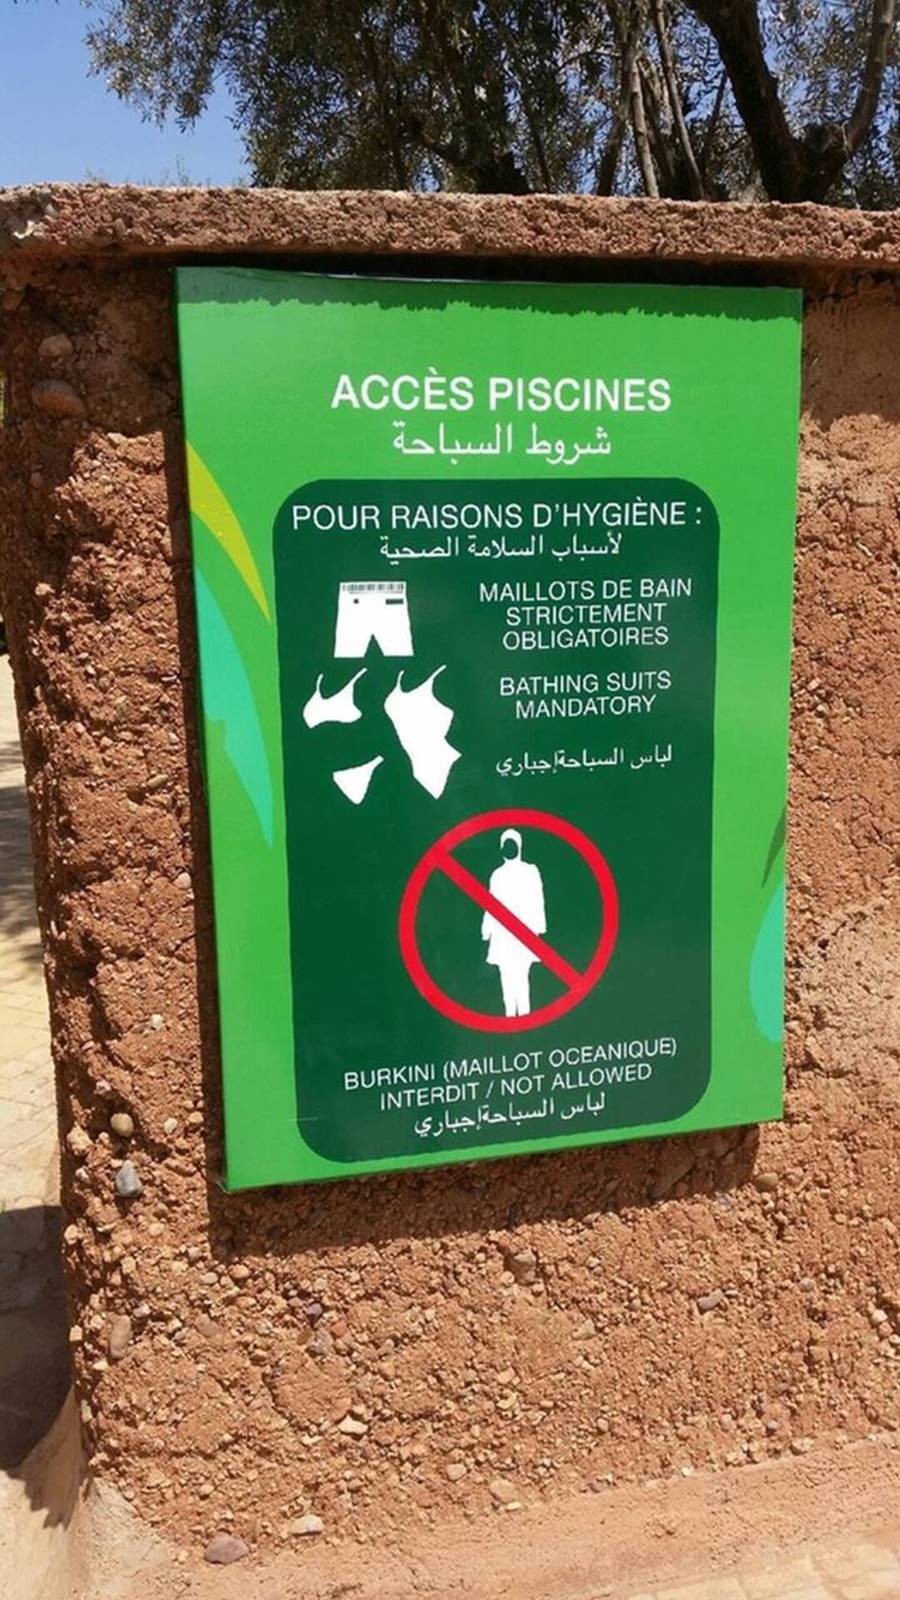 Persino in Marocco il burkini è già vietato 